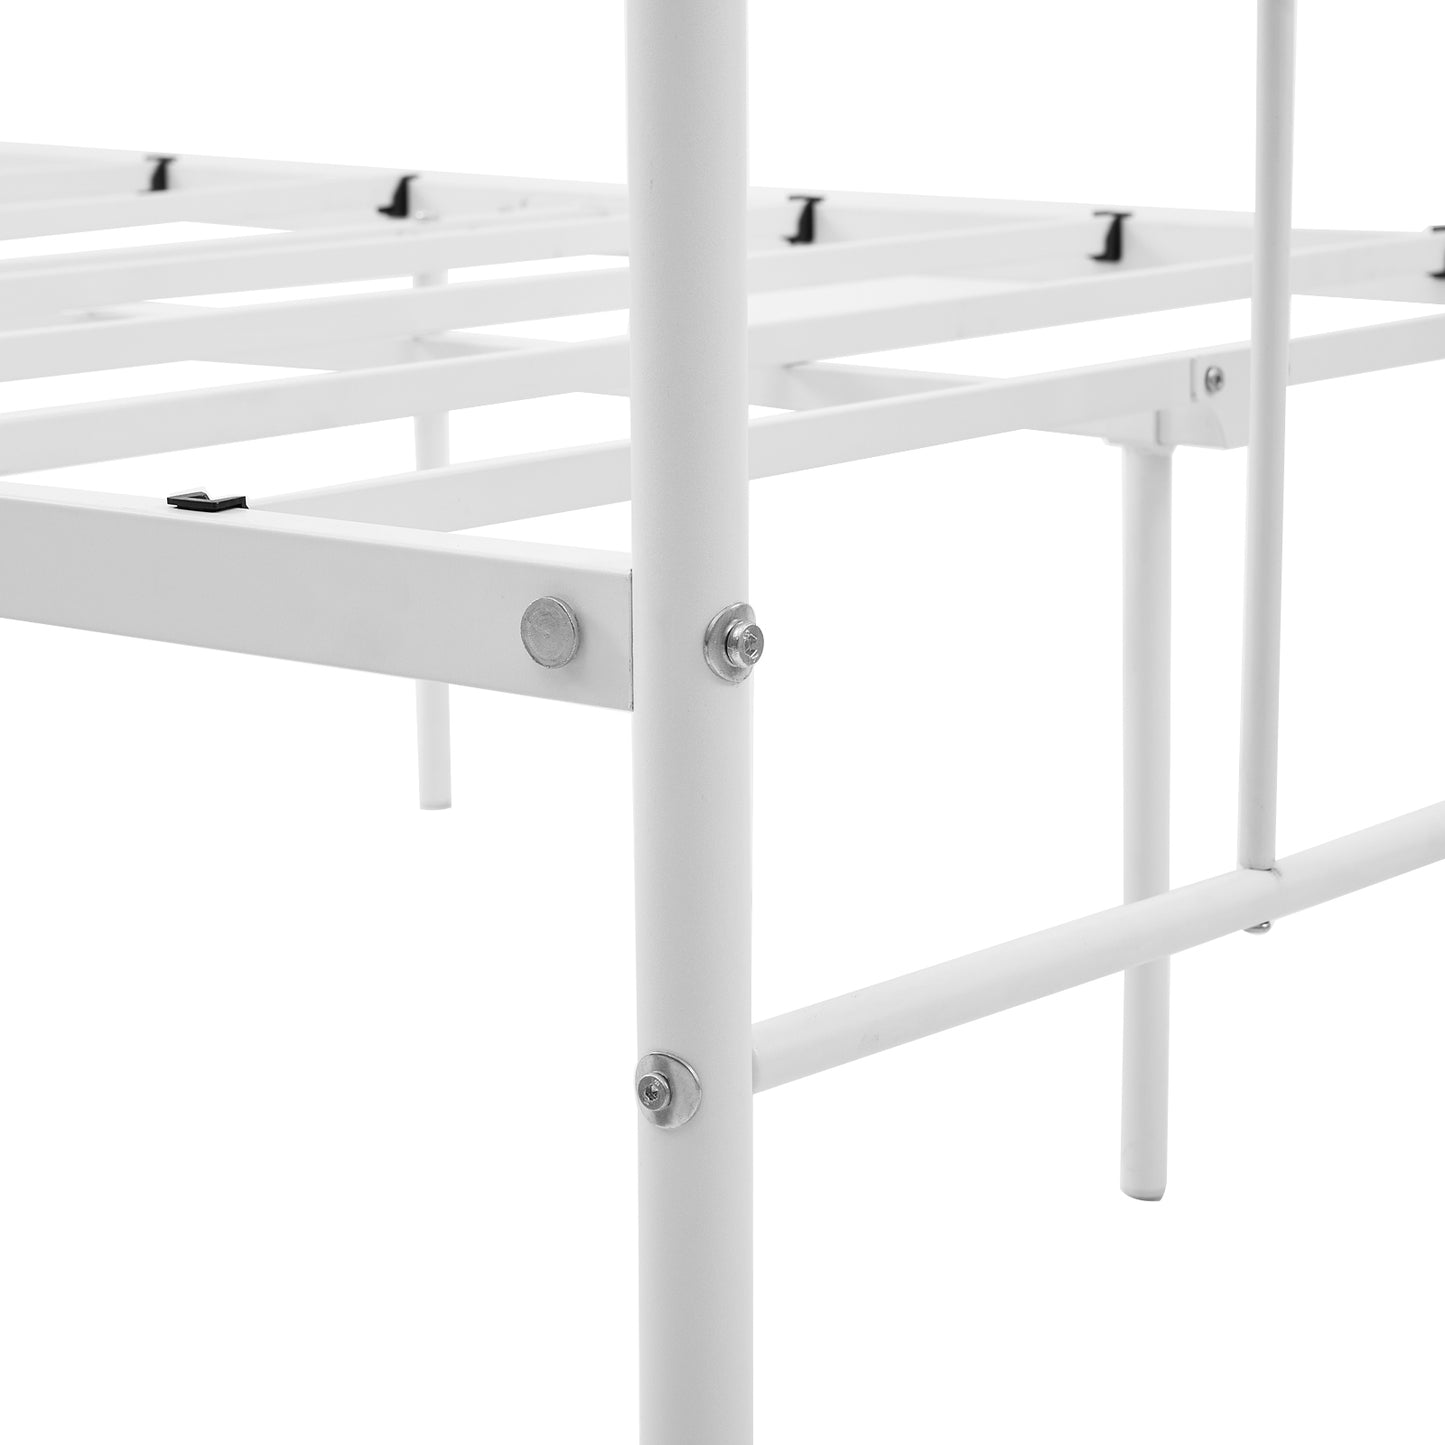 TIKI Double Metal Bed 123*207 cm - White